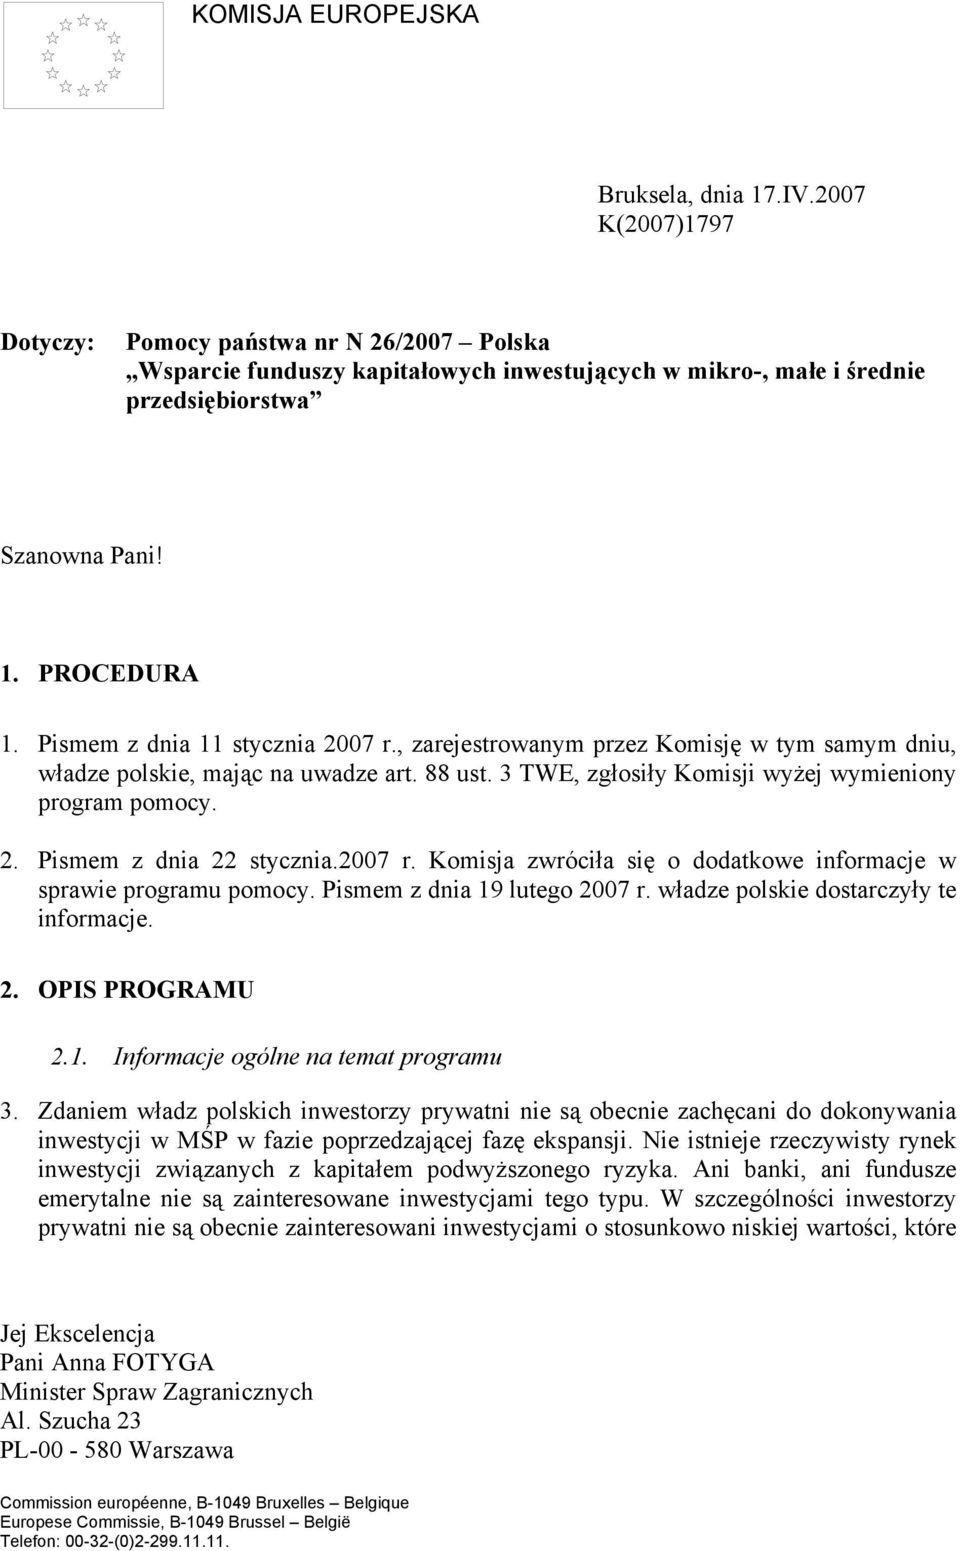 Pismem z dnia 11 stycznia 2007 r., zarejestrowanym przez Komisję w tym samym dniu, władze polskie, mając na uwadze art. 88 ust. 3 TWE, zgłosiły Komisji wyżej wymieniony program pomocy. 2. Pismem z dnia 22 stycznia.